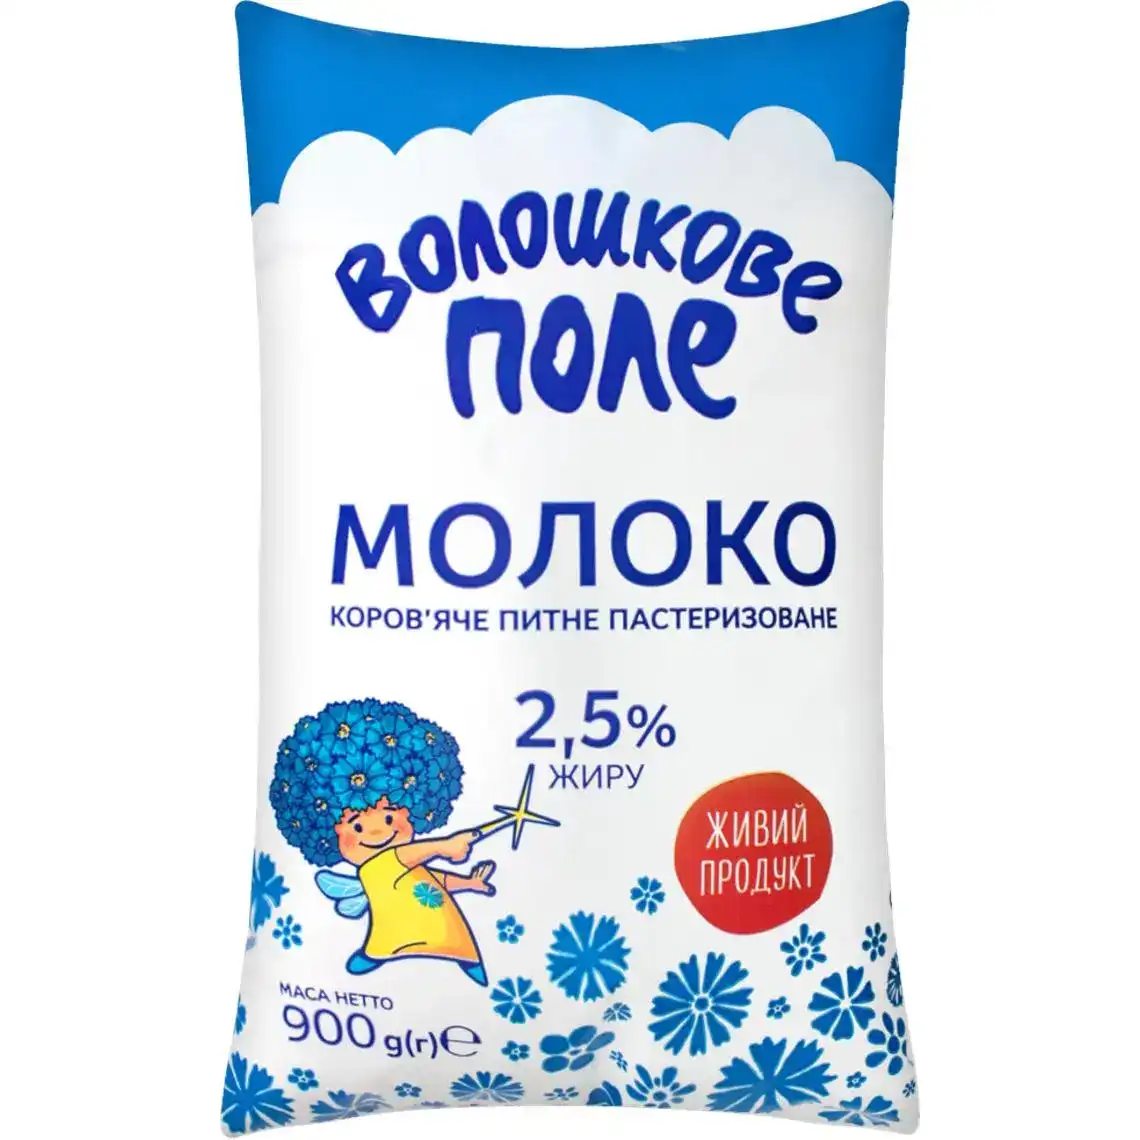 Молоко Волошкове поле 2.5% пастеризоване в пакеті 900 г